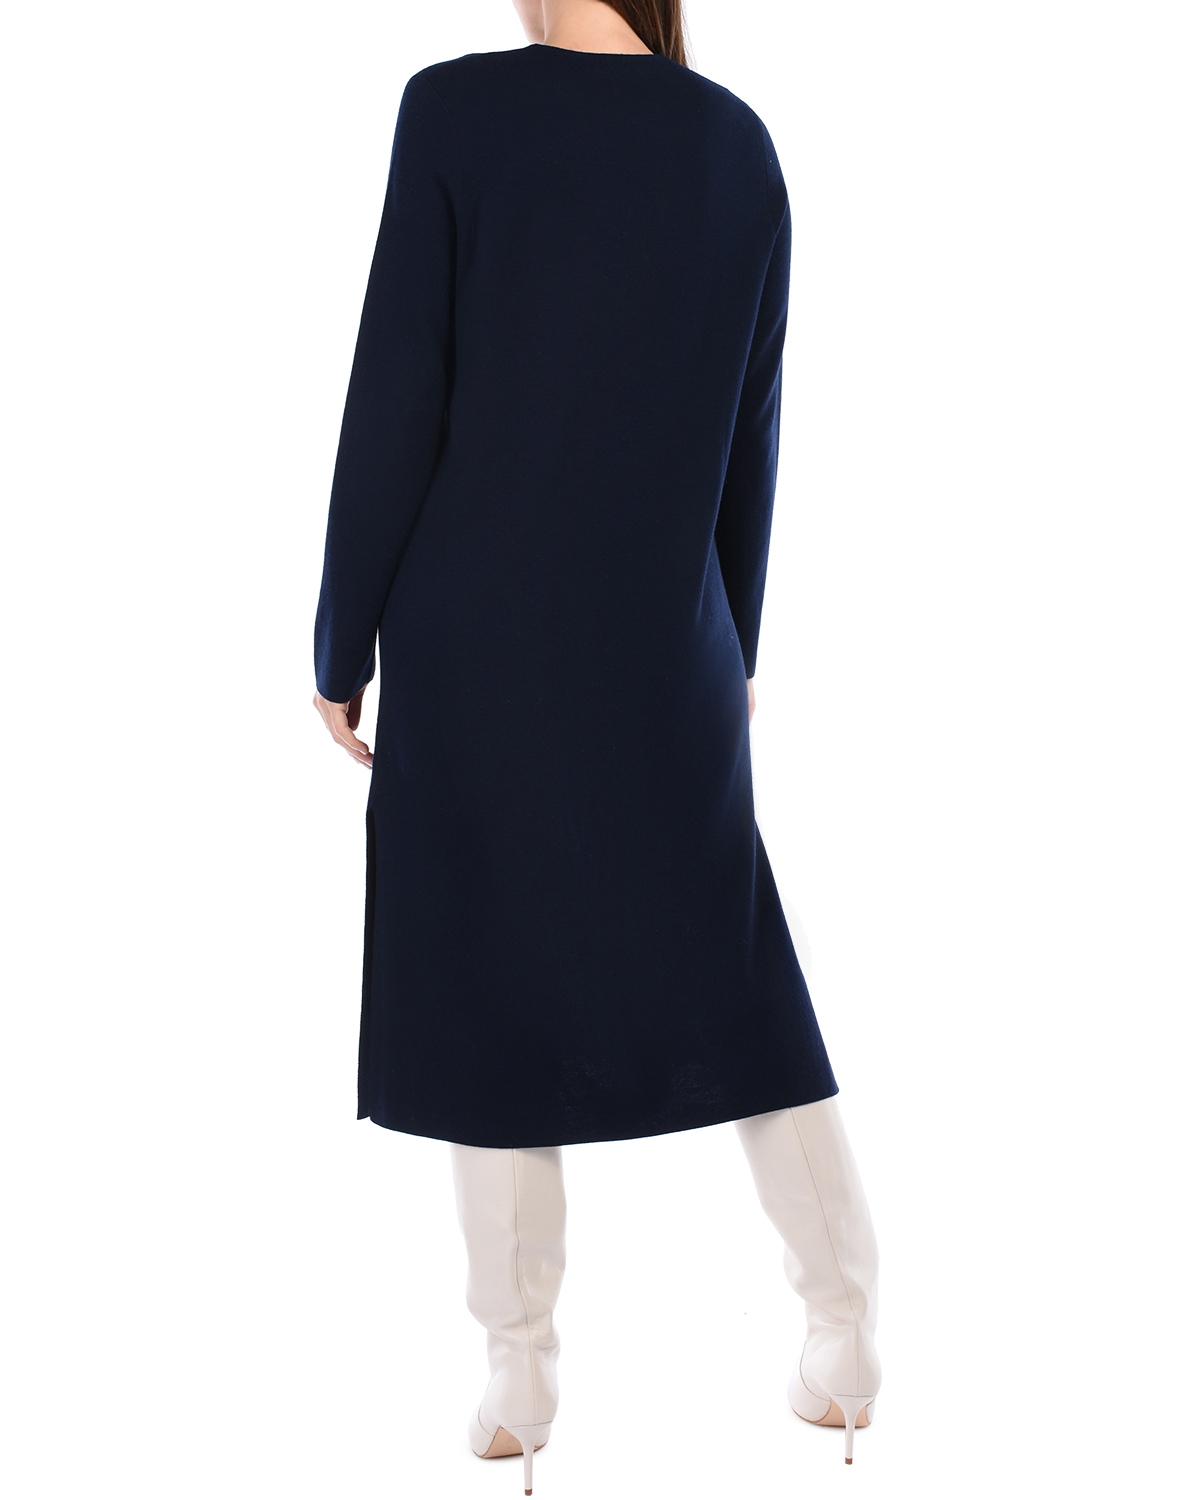 Синее платье из шерсти мериноса Allude, размер 38, цвет синий - фото 3